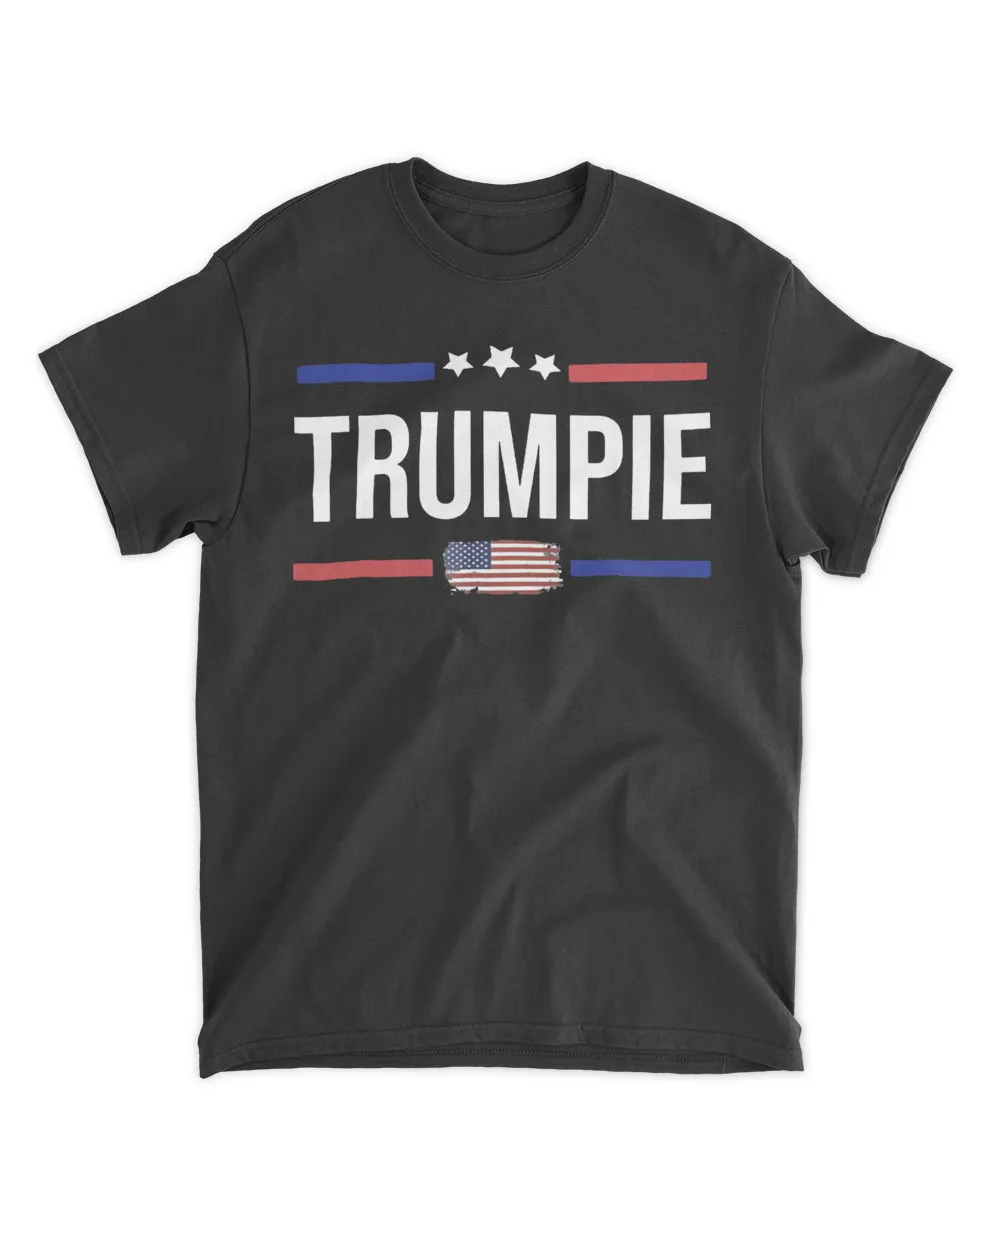 Trumpie Anti Biden Shirt